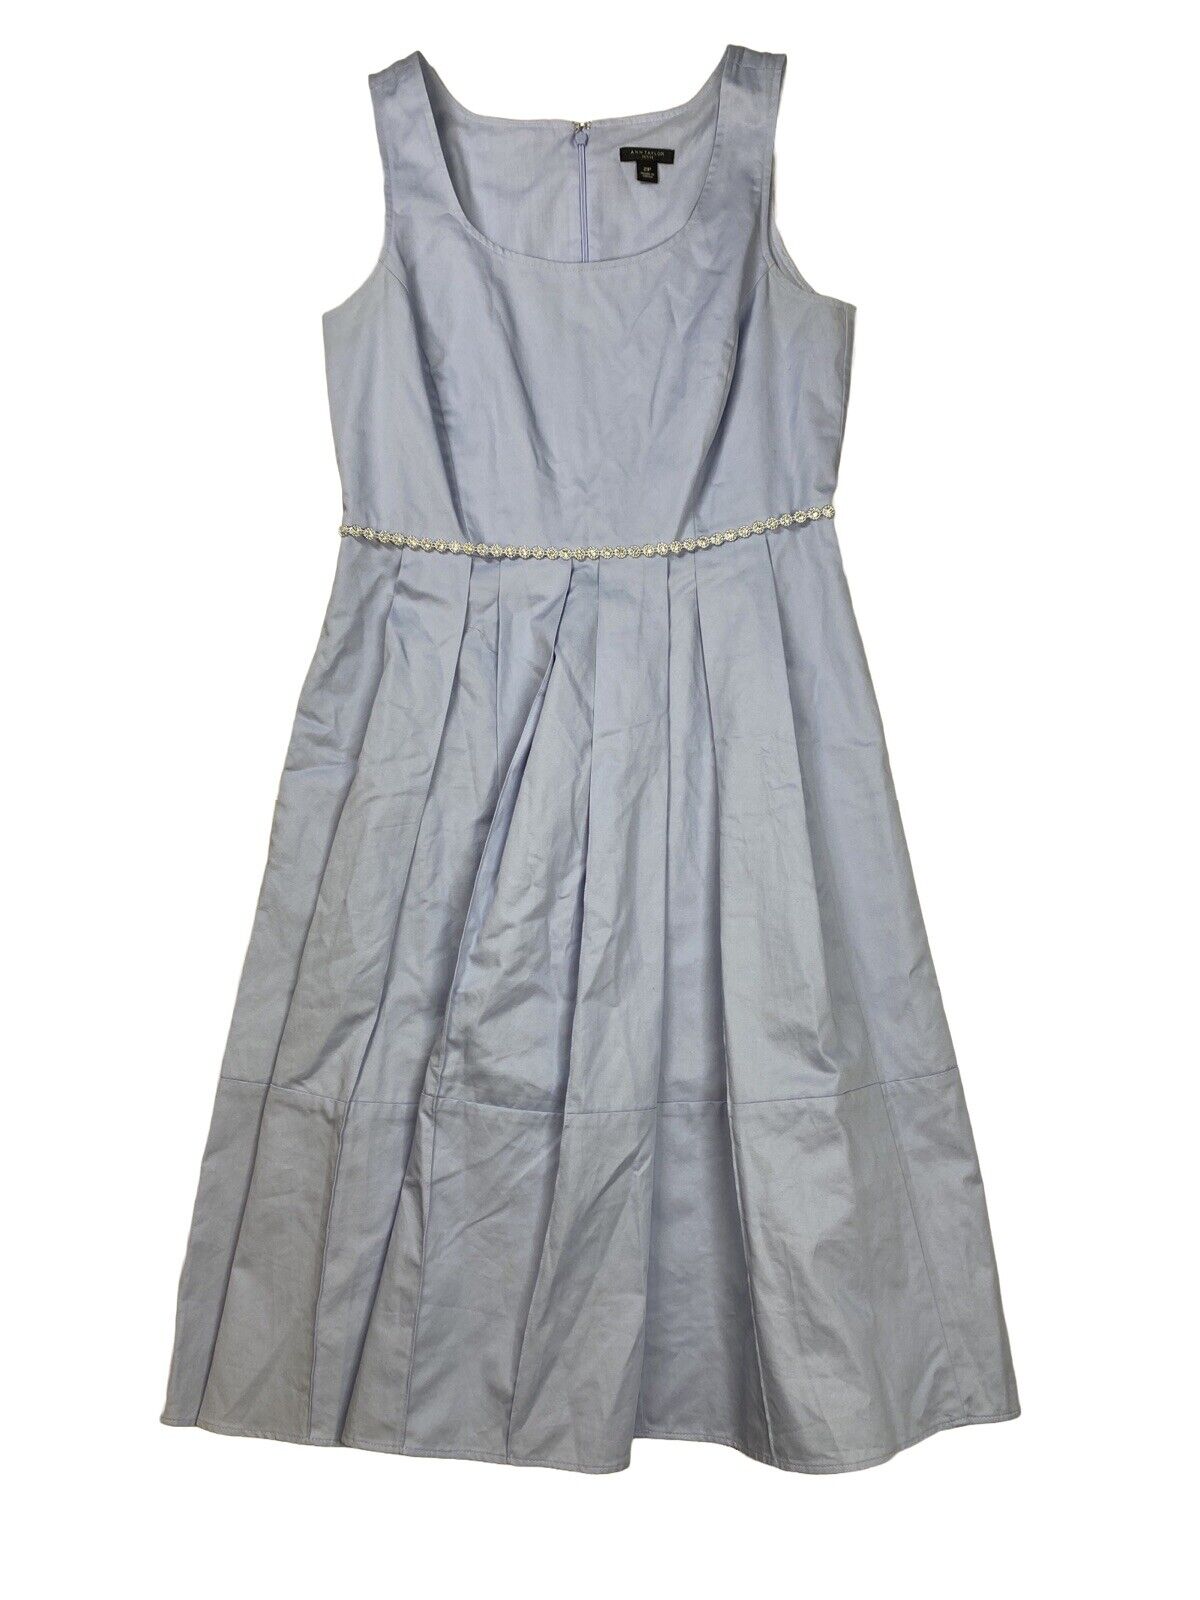 Ann Taylor Women's Light Blue Sleeveless Belted A-Line Dress - Petite 2P